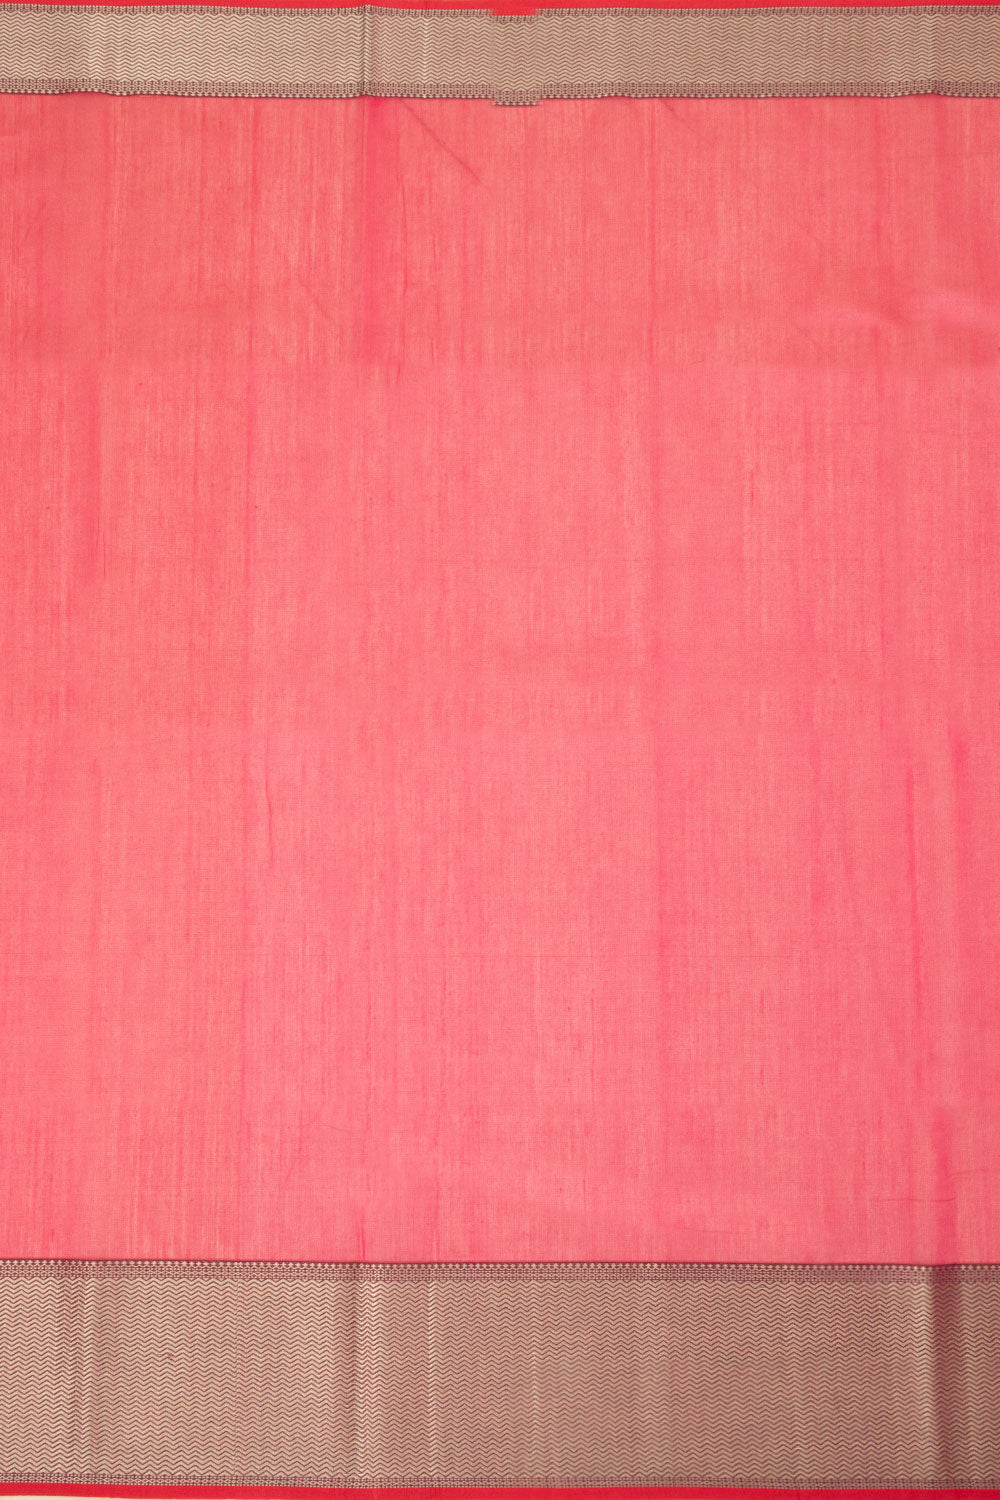 Rose Handloom Maheshwari Silk Cotton Saree - Avishya